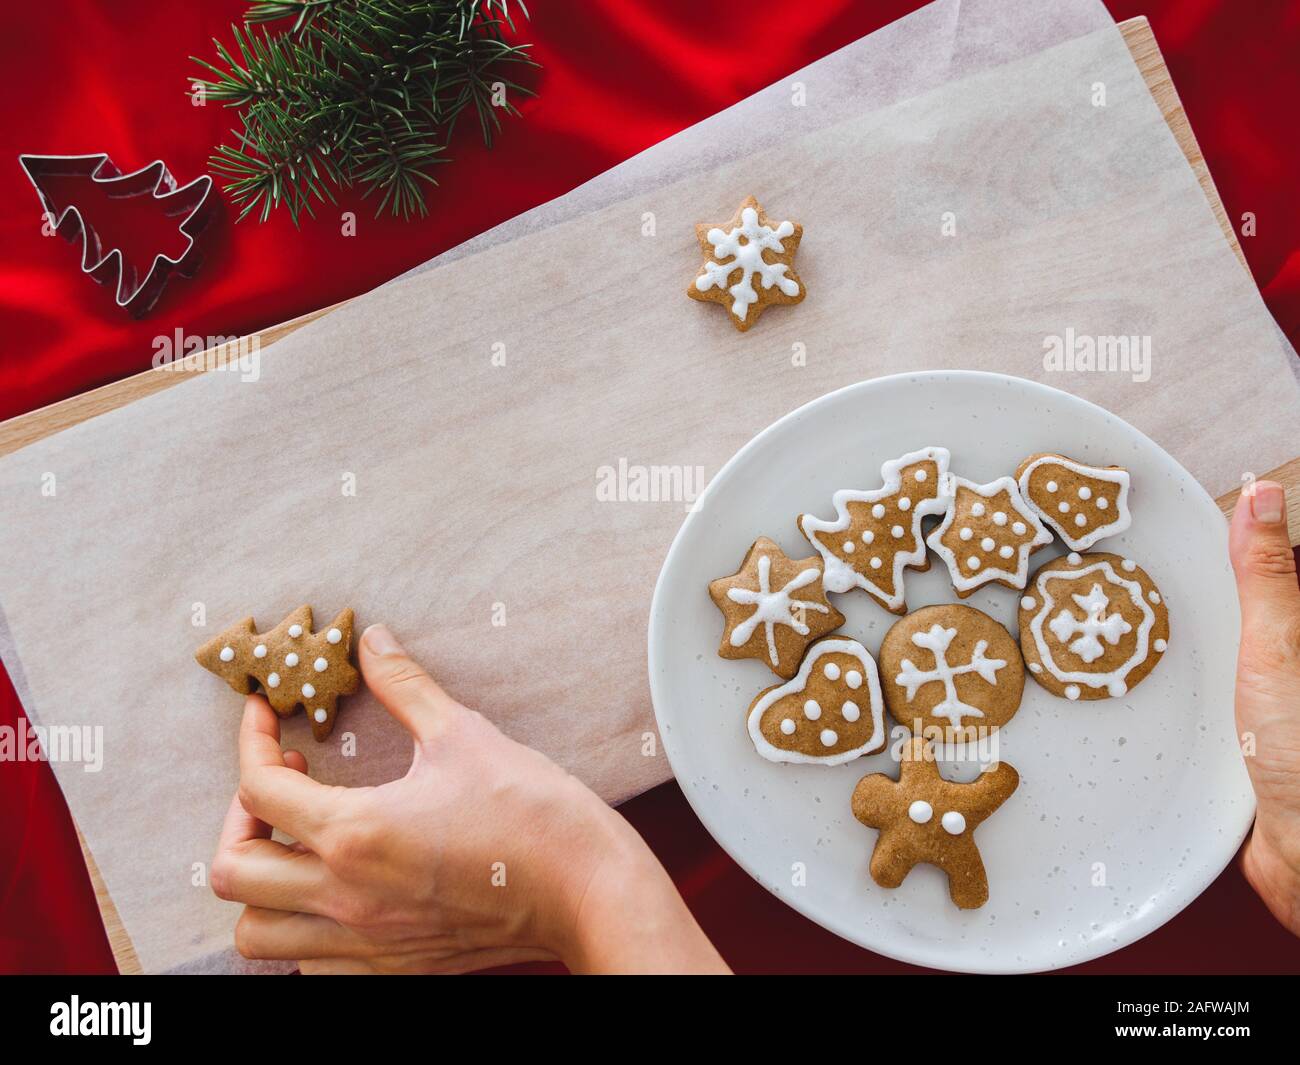 Hausgemachte cookies geformte Baum auf Platte und Hand Weihnachtsplätzchen in verschiedenen Formen: Stern, Tannenbaum, Weihnachten auf weißem Holz Hintergrund, flach Stockfoto